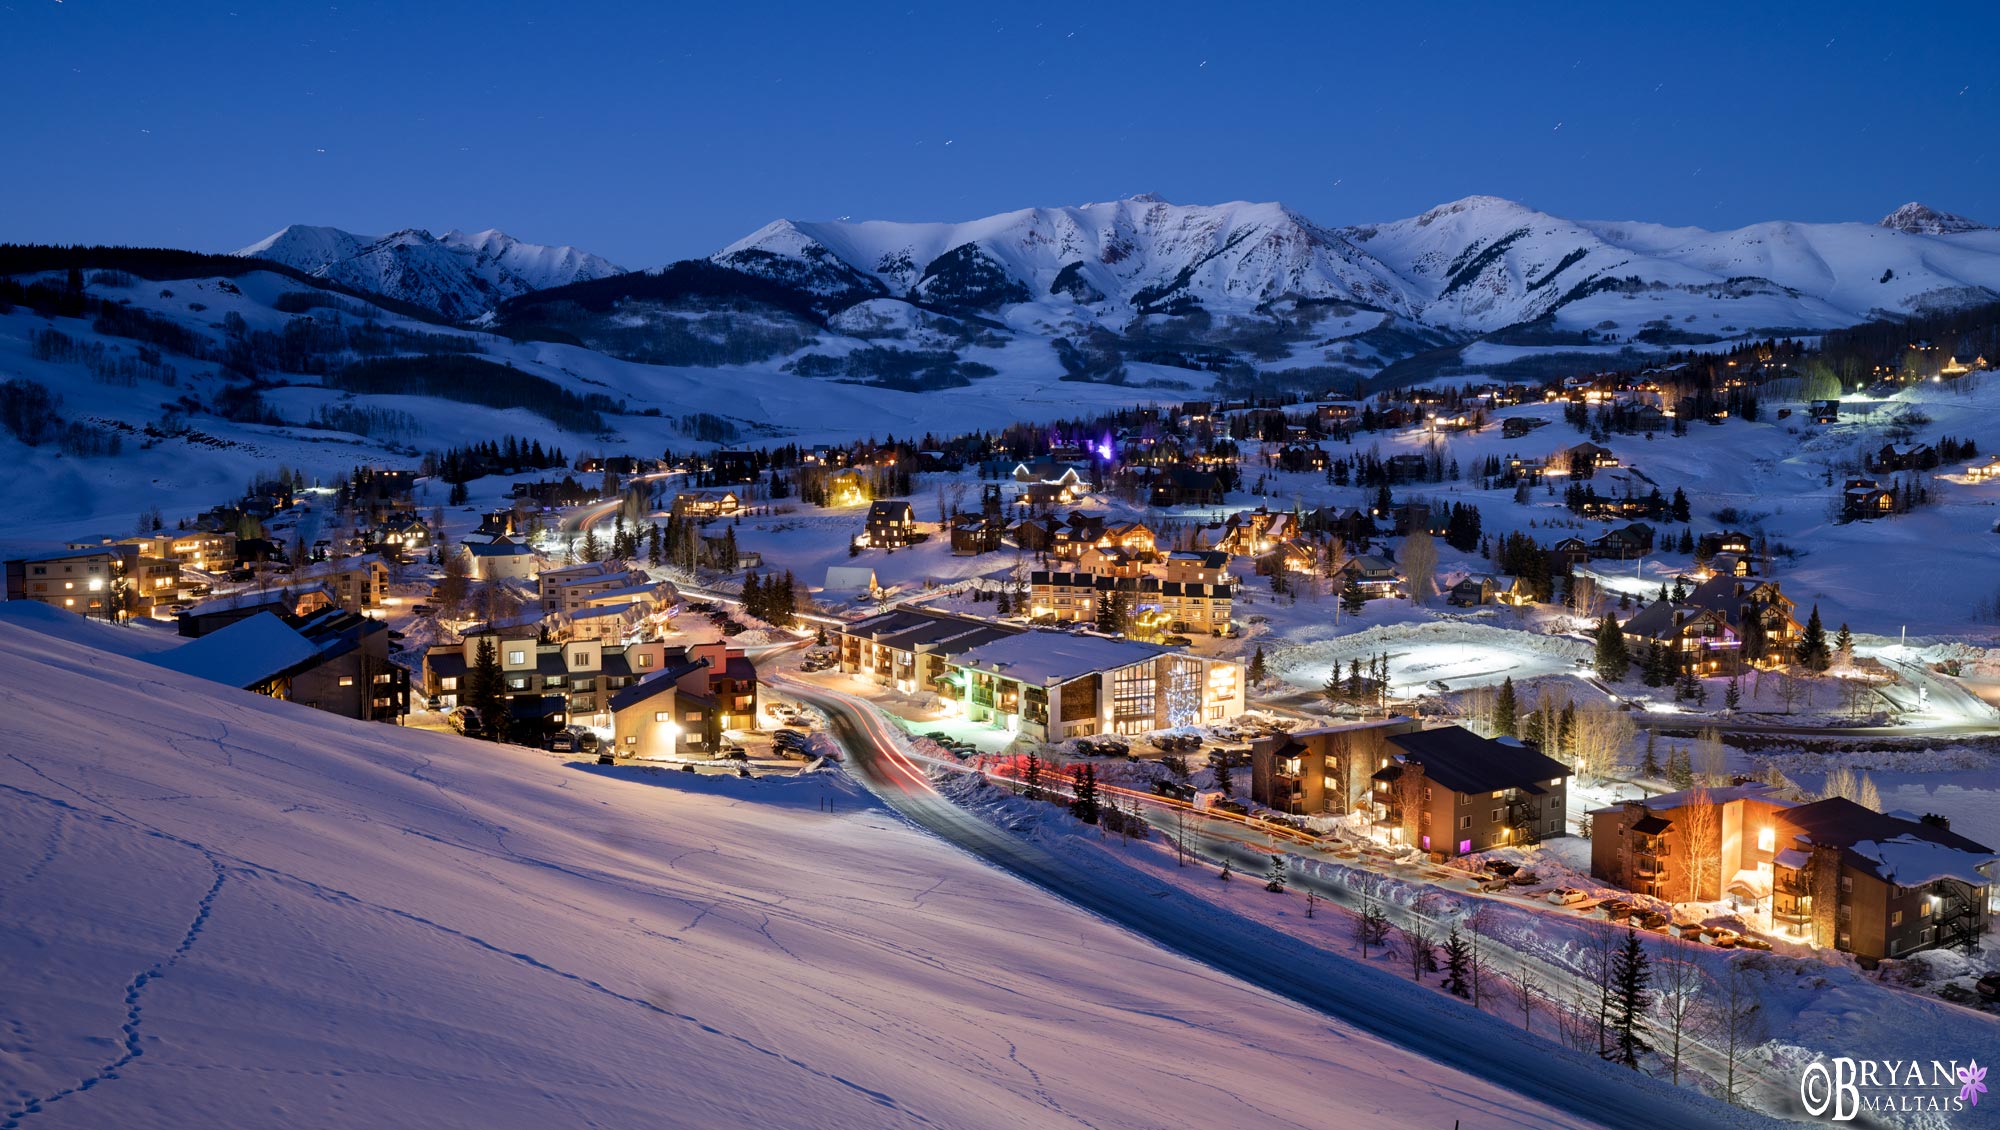 Mt cretsed butte ski village at night winter colorado photo print